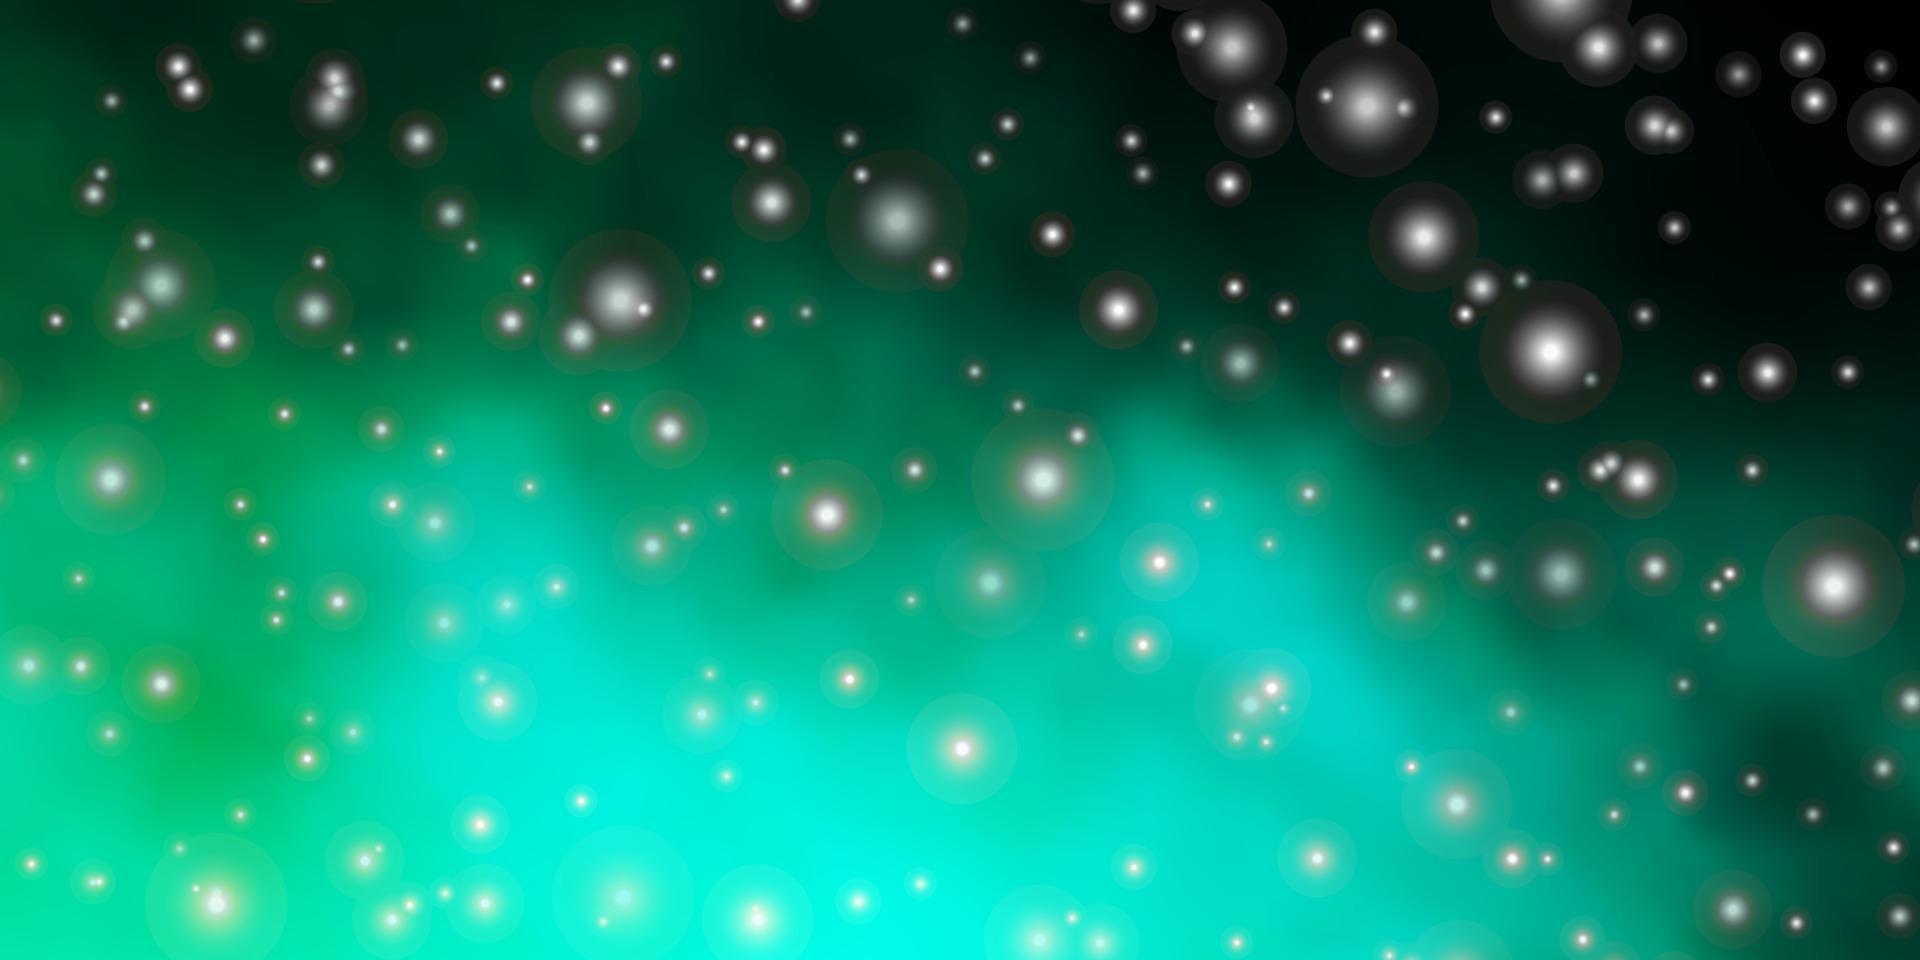 hellgrünes Vektorlayout mit hellen Sternen. vektor